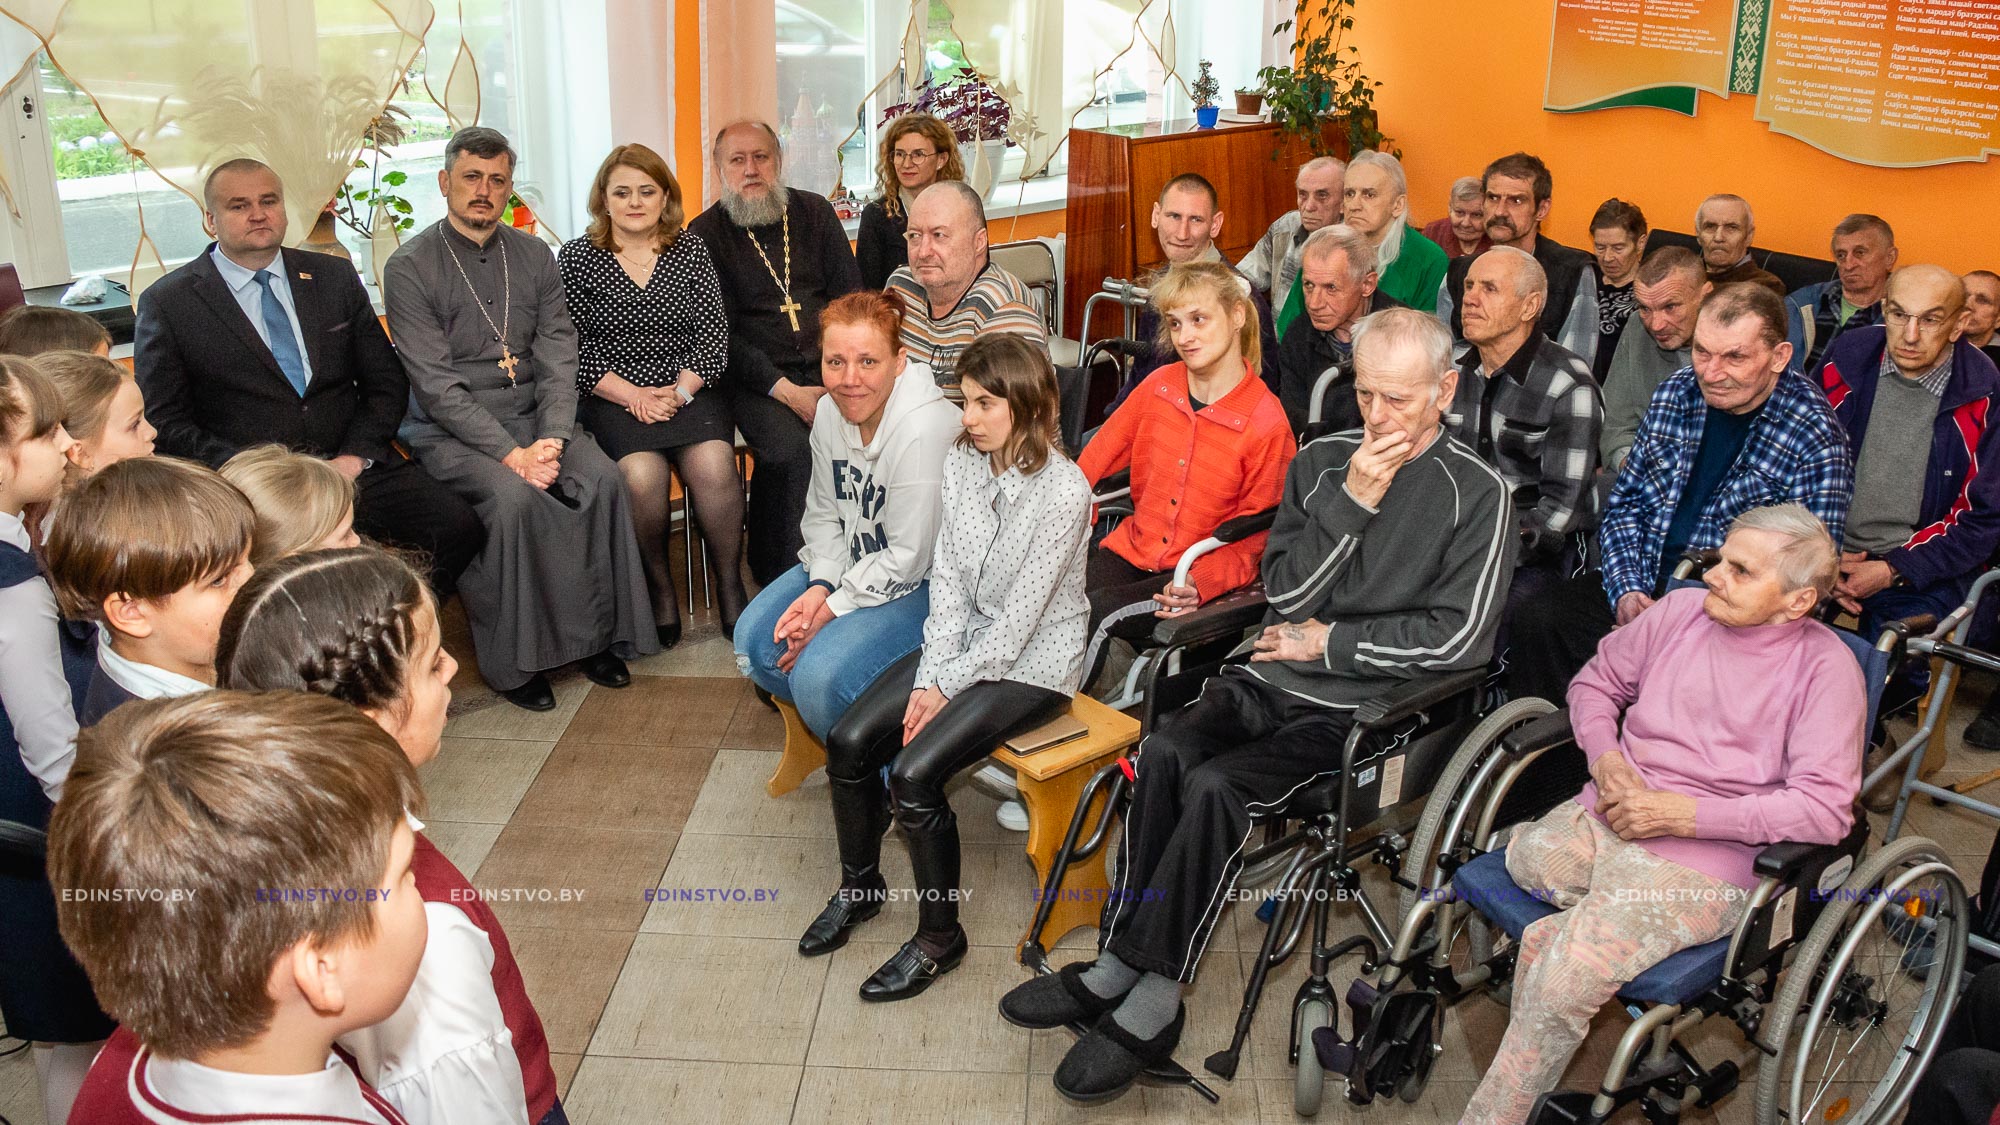 Руководство Борисовского района и духовенство поздравили проживающих в социальных учреждениях региона с Пасхой